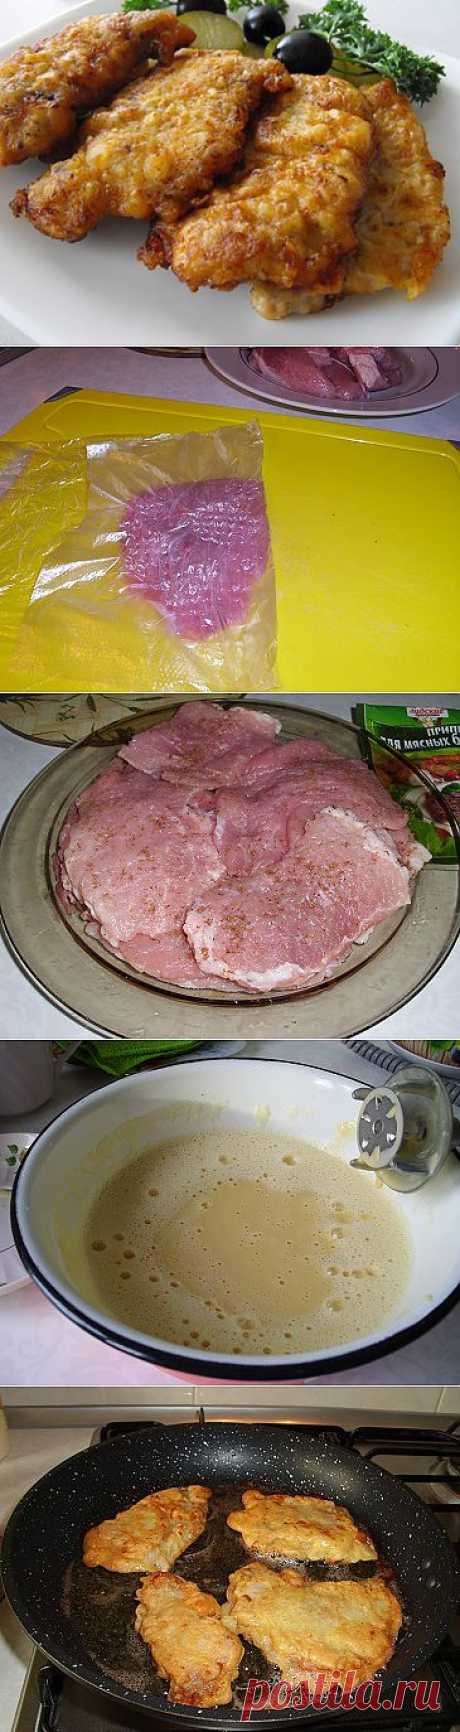 Как приготовить отбивные из свинины? | Рецепты моей мамы